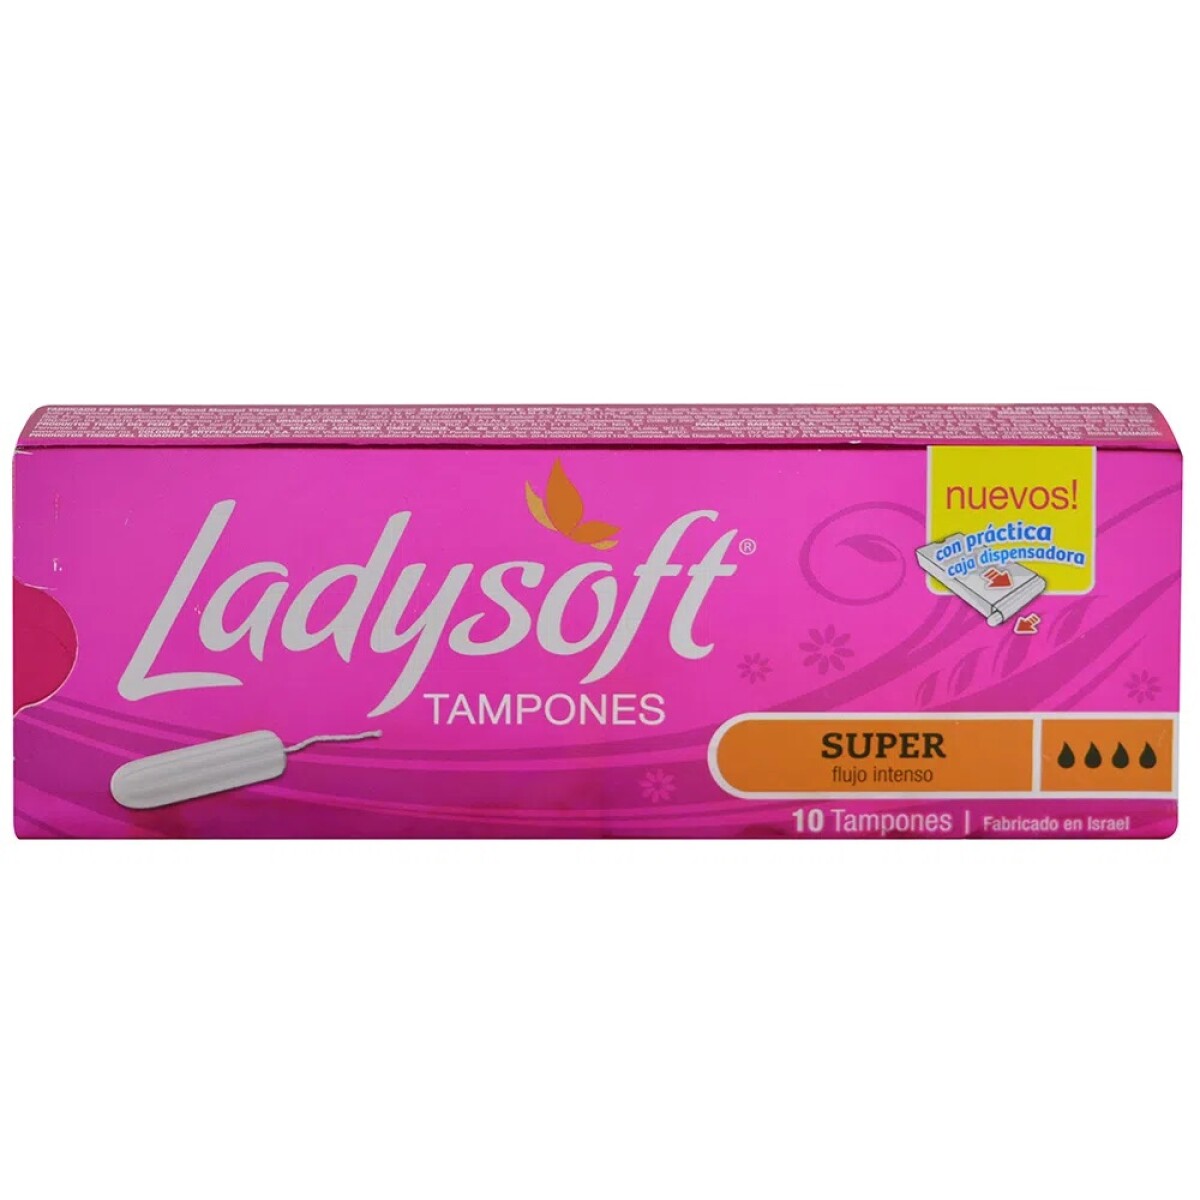 Tampones Ladysoft Super 10 Uds. 